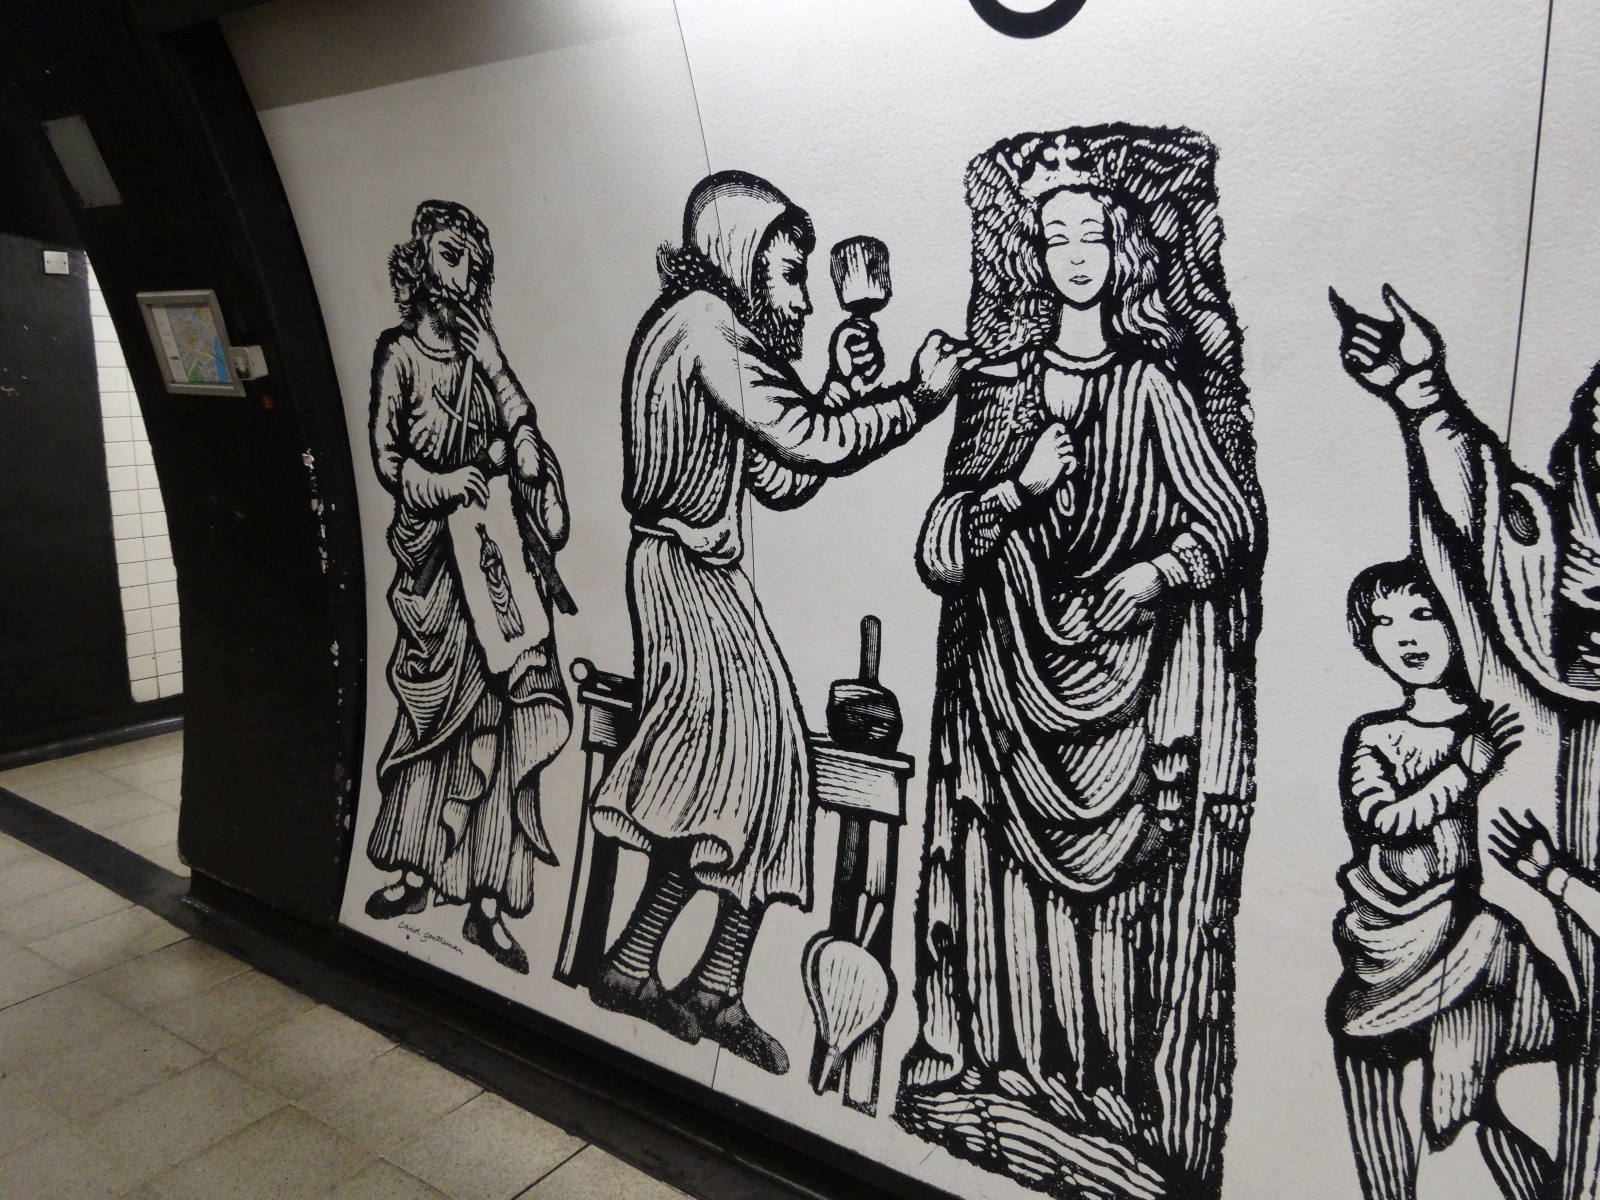 photo of Charing Cross underground mural - 5 of 5